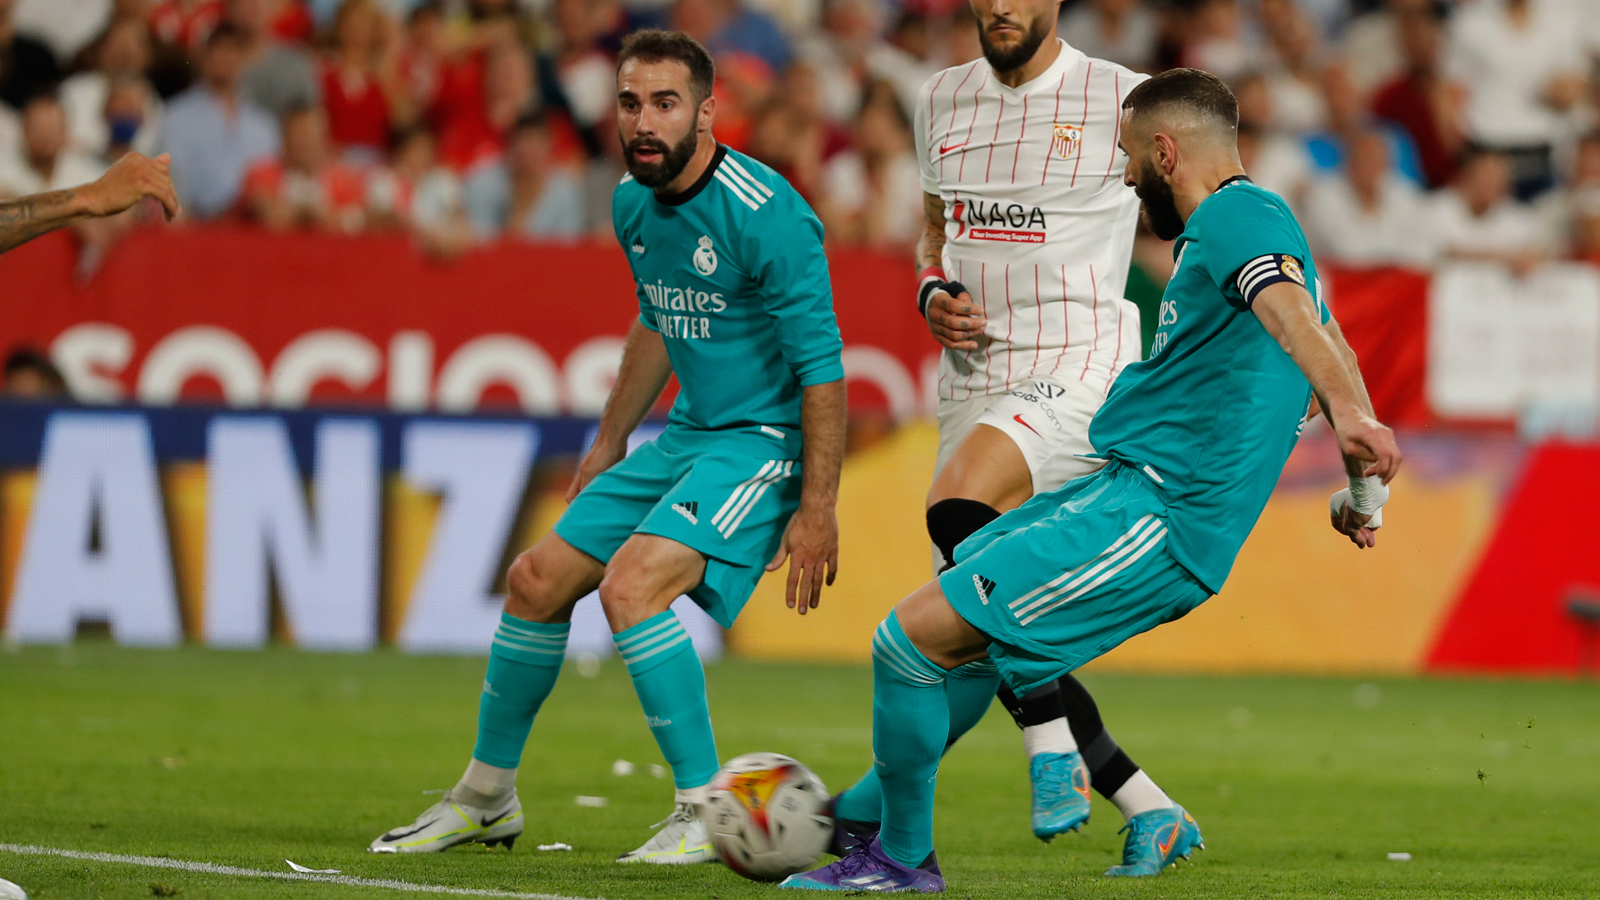 Gol de Benzema (2-3) Sevilla vs Real Madrid